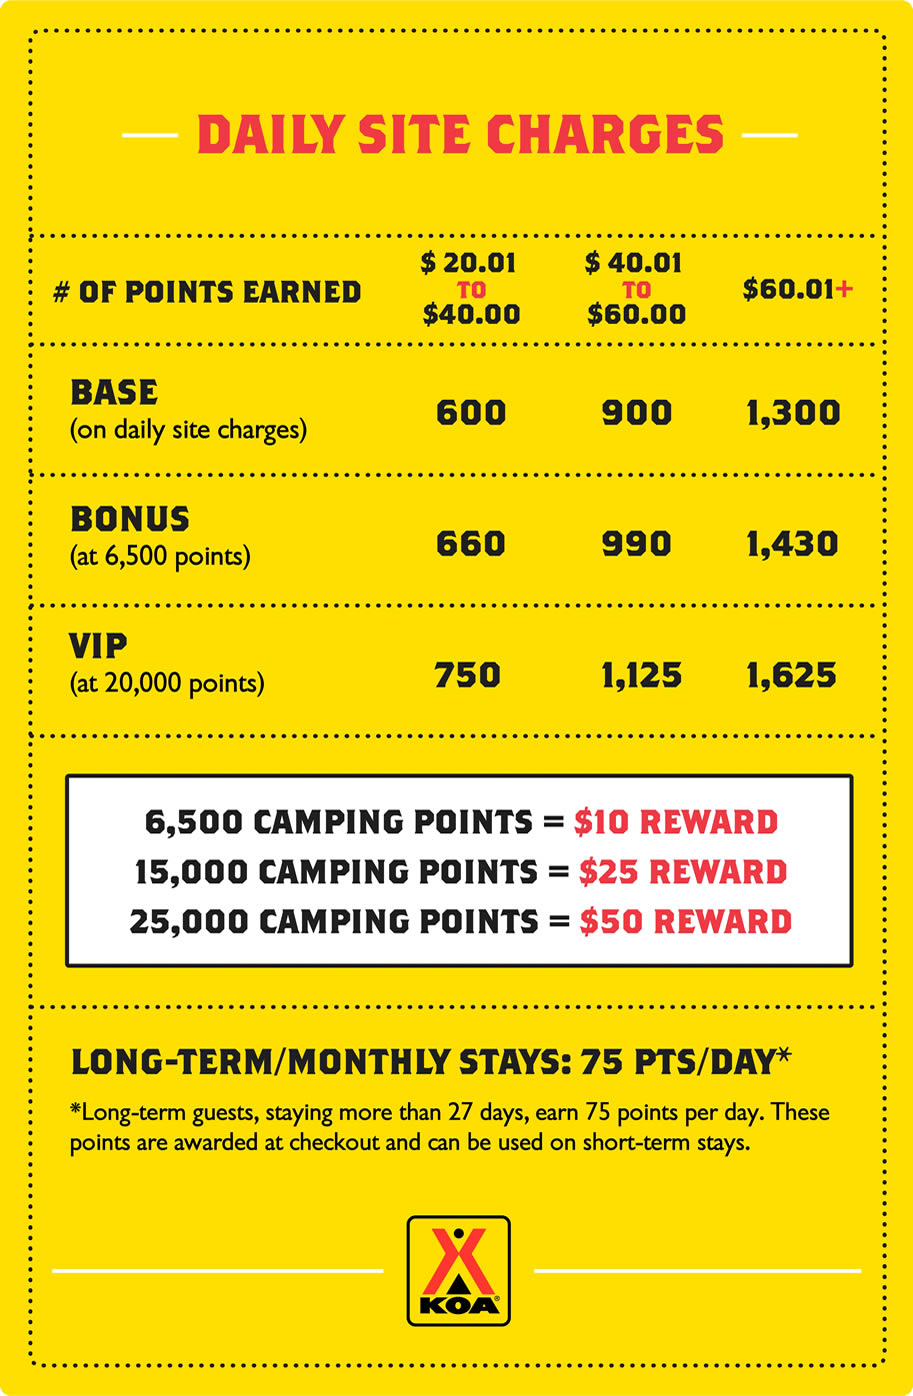 Earning Rewards Points with KOA Rewards